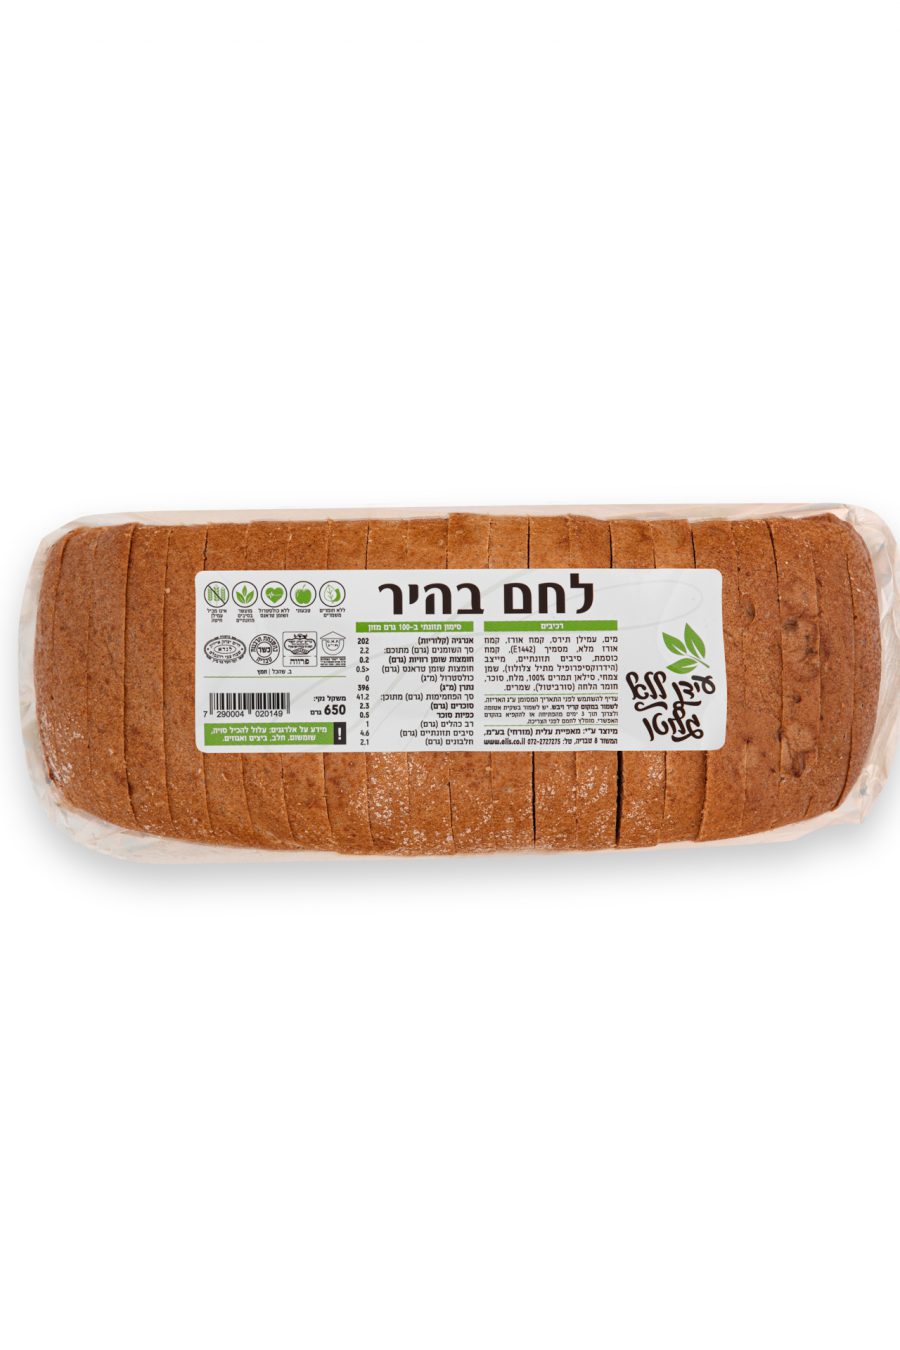 לחם בהיר